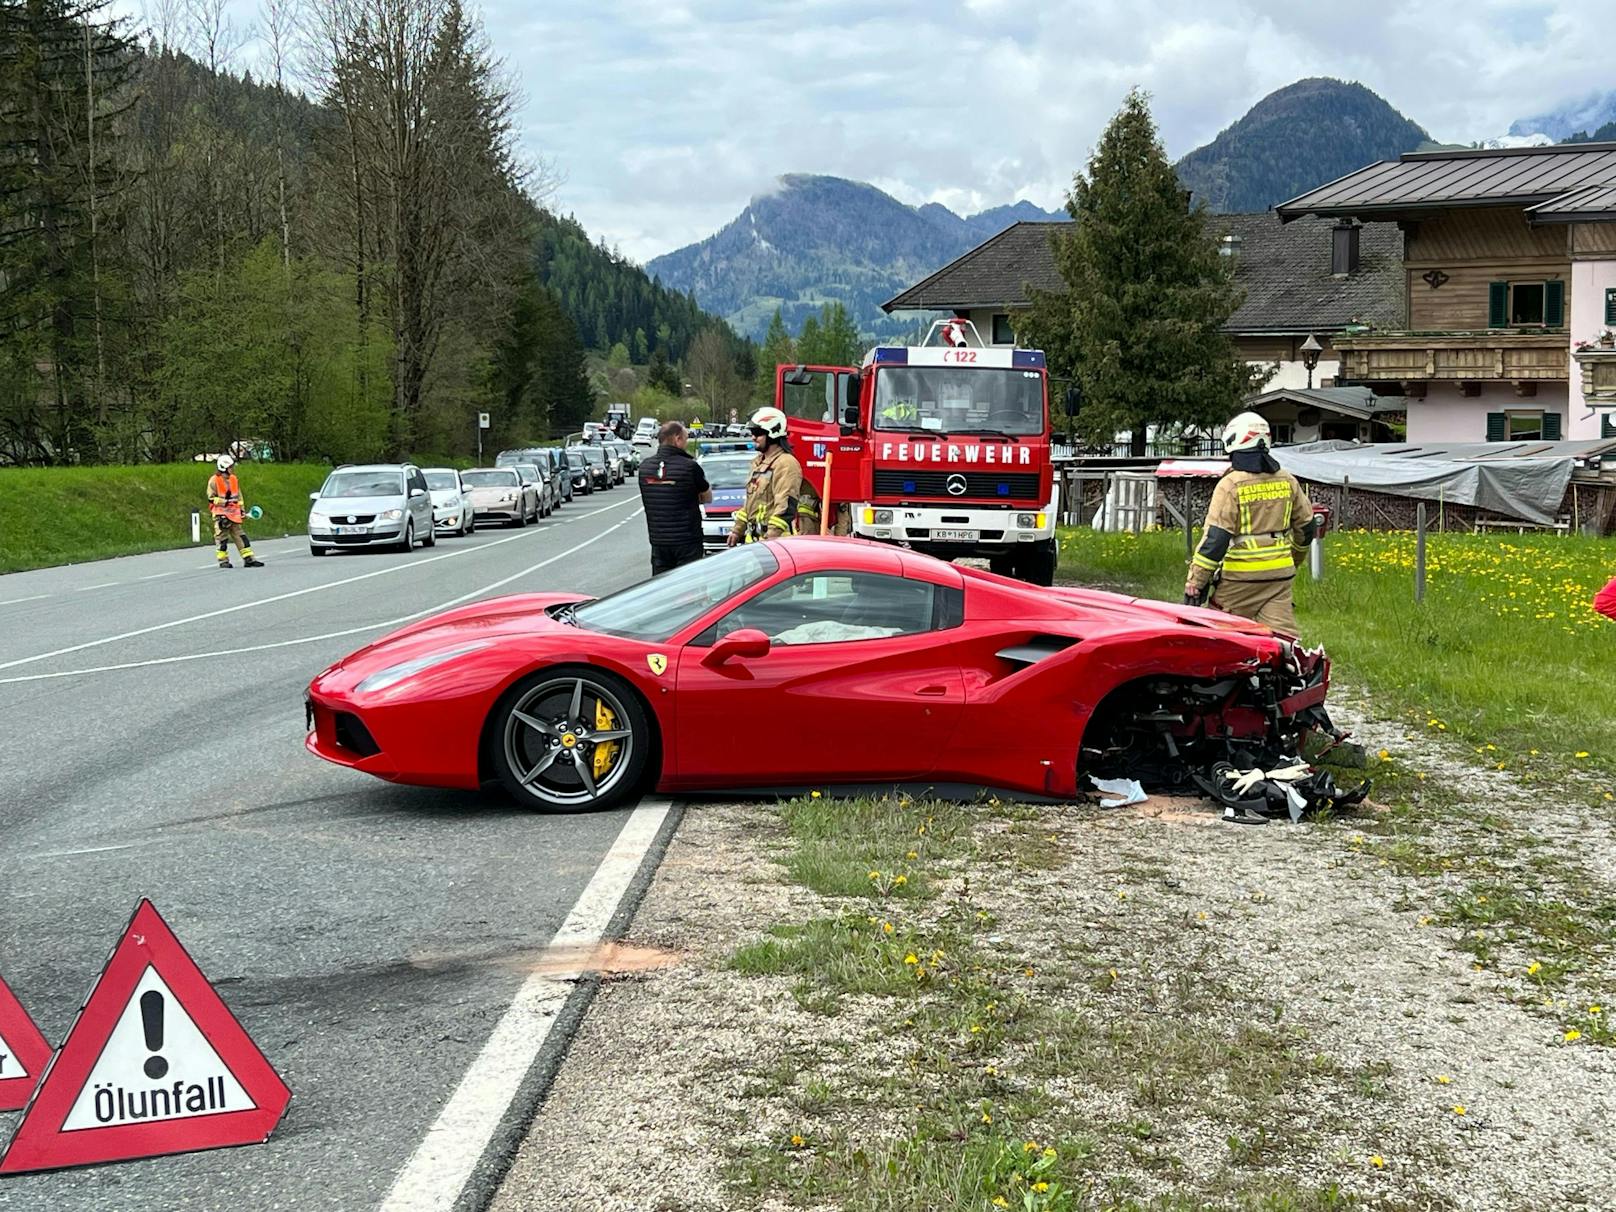 Heftiger Crash! Ferrari bei Unfall in Tirol beschädigt